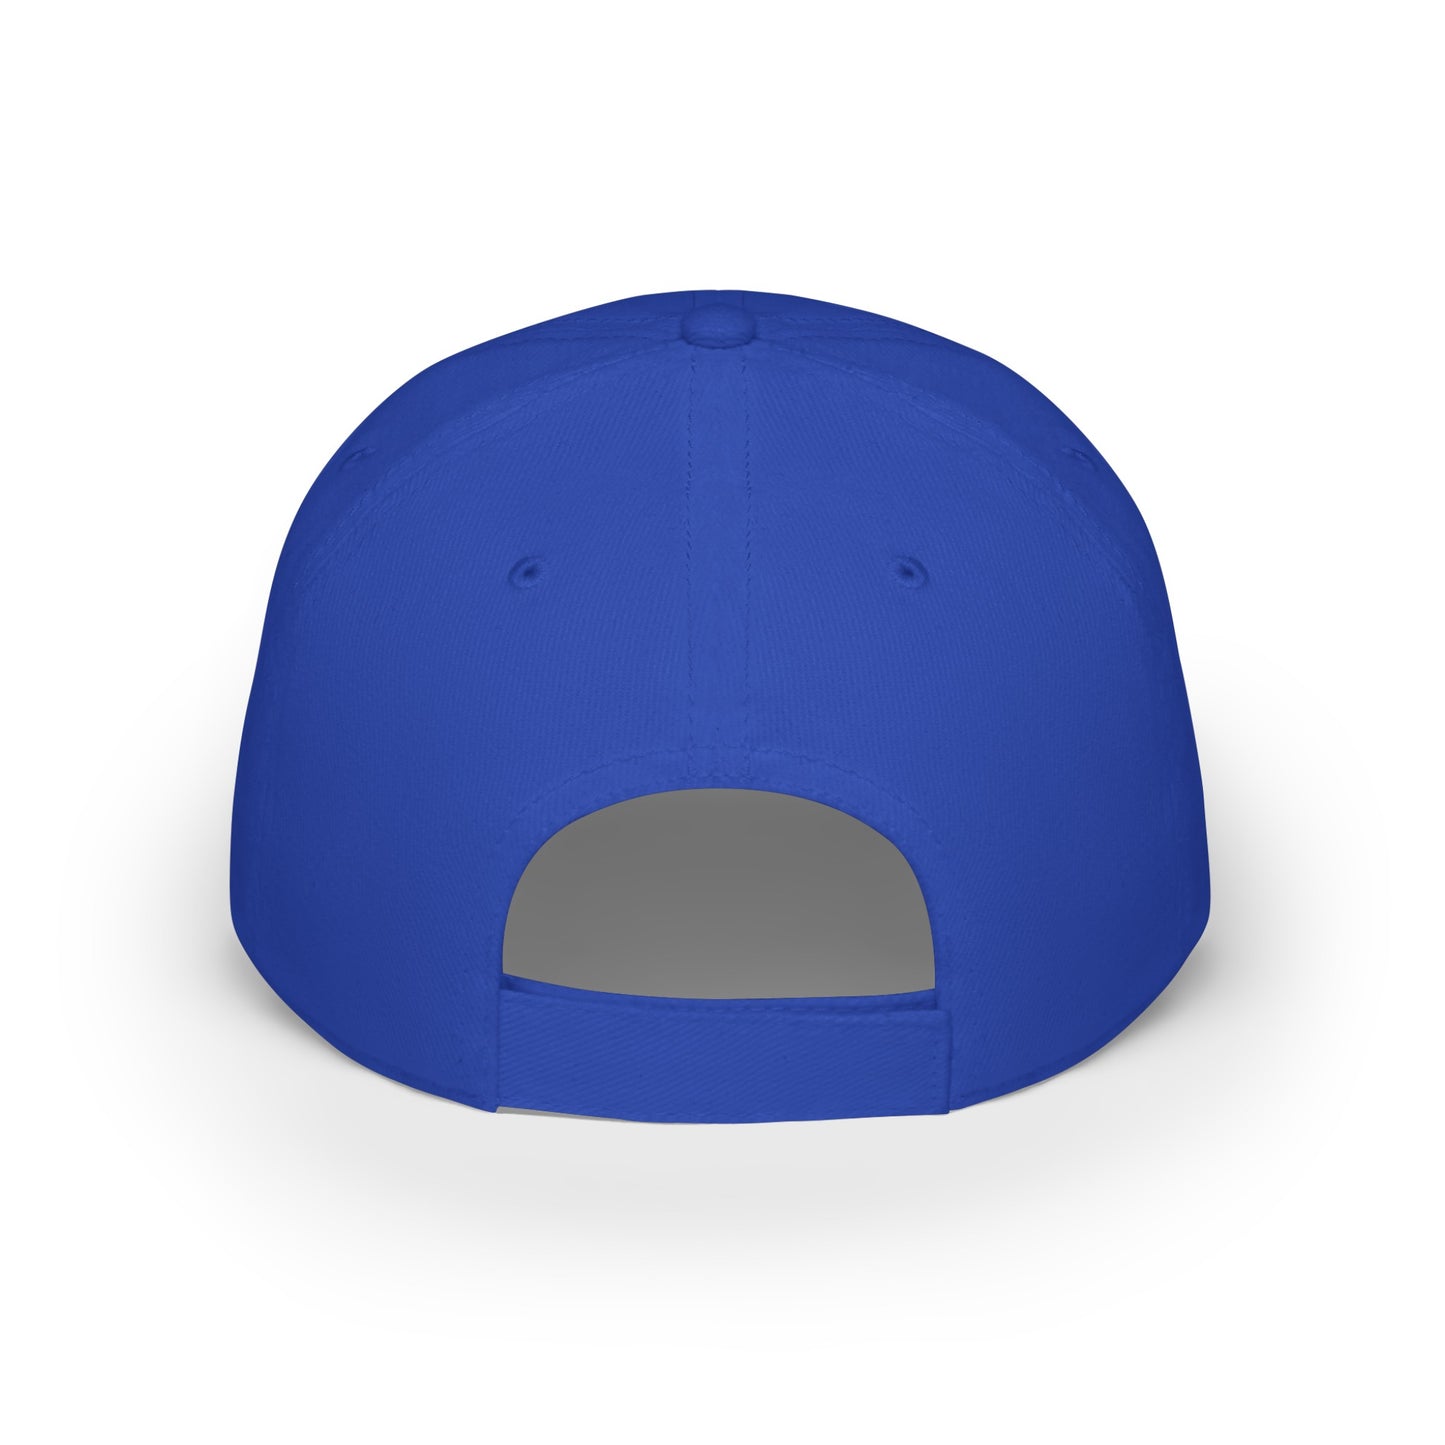 MDBTDJ#AJWRC - Low Profile Baseball Cap Tattooed Dj's Limited Edition, Hats, Tattooed Djs Shop